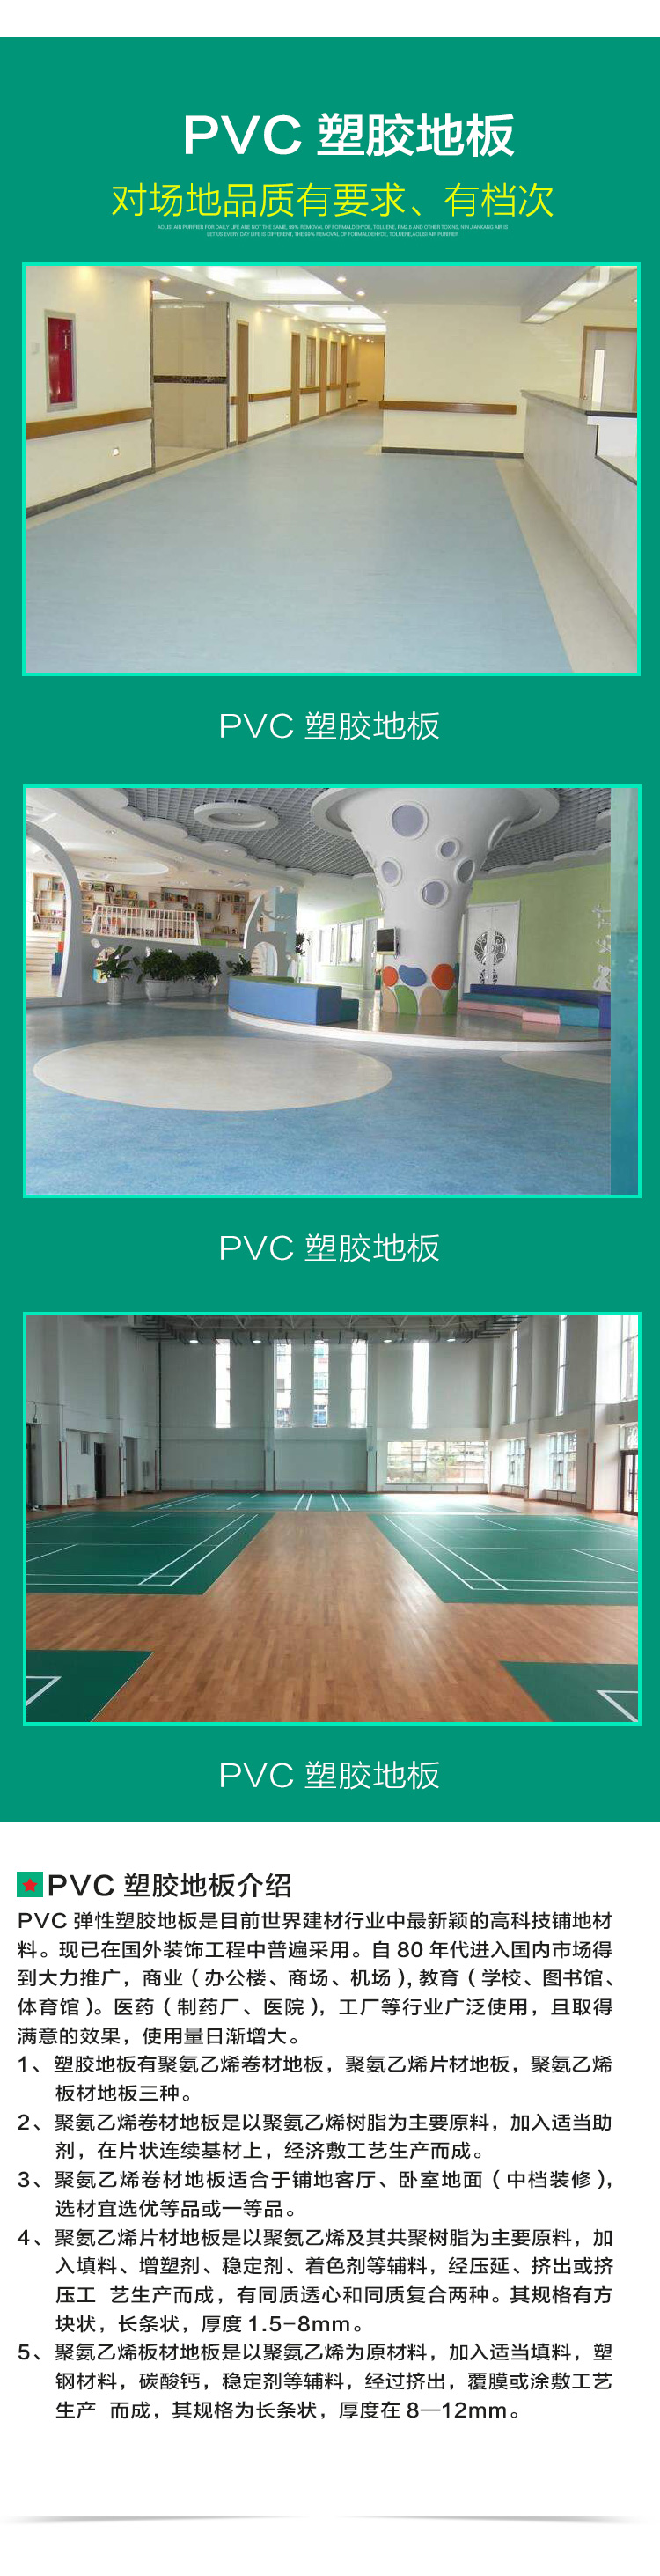 PVC塑

胶地板2019_02.jpg